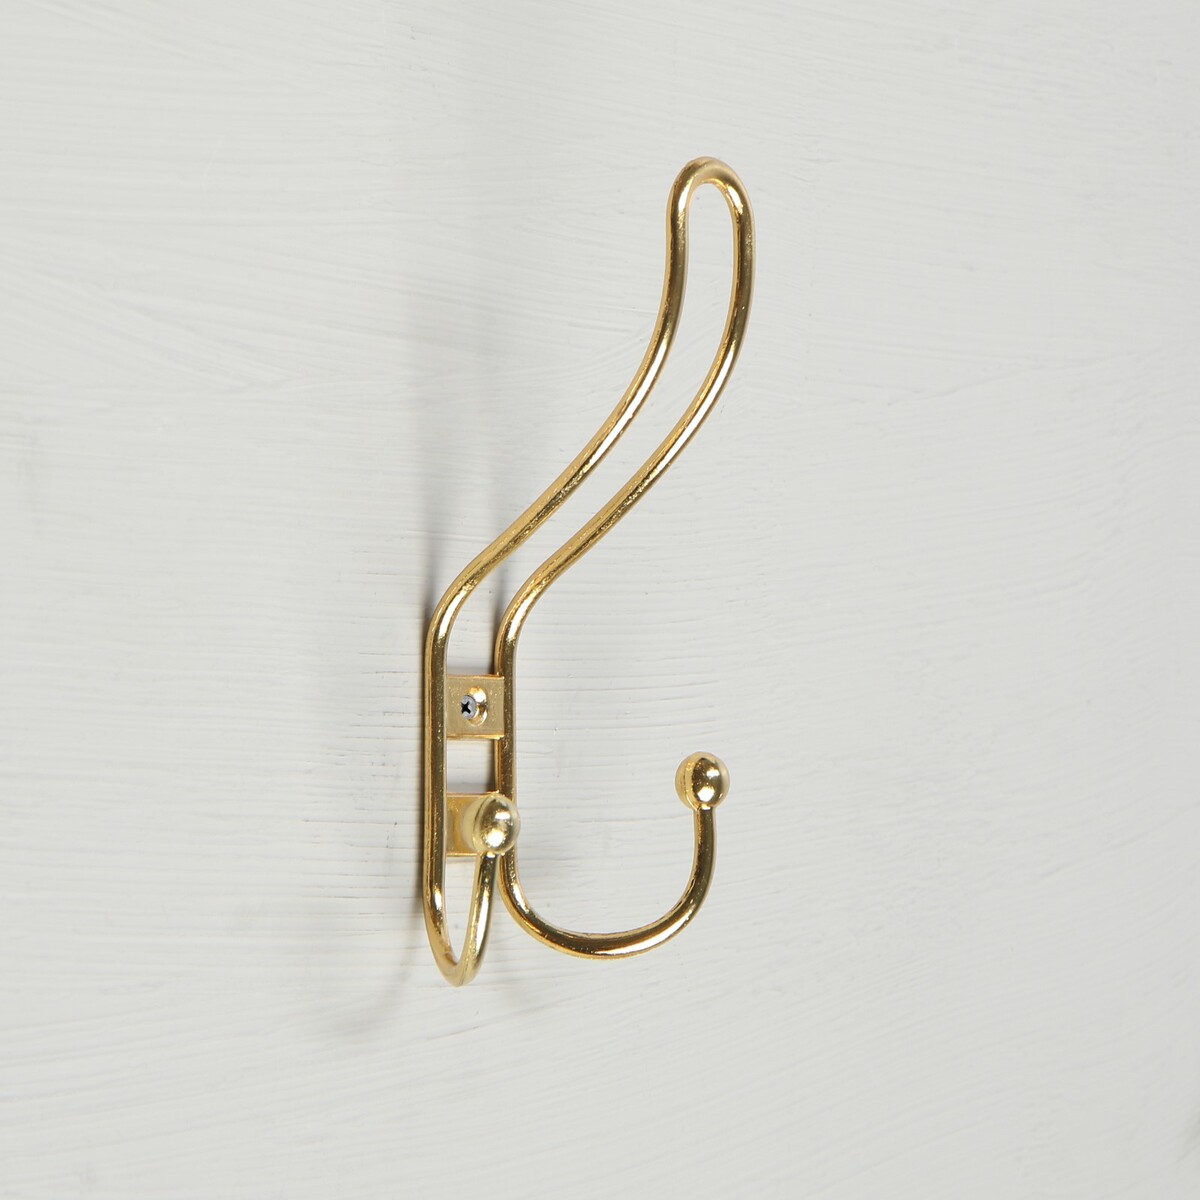 Крючок мебельный km303gp, трехрожковый, цвет золото крючок мебельный cappio wand трехрожковый бронза